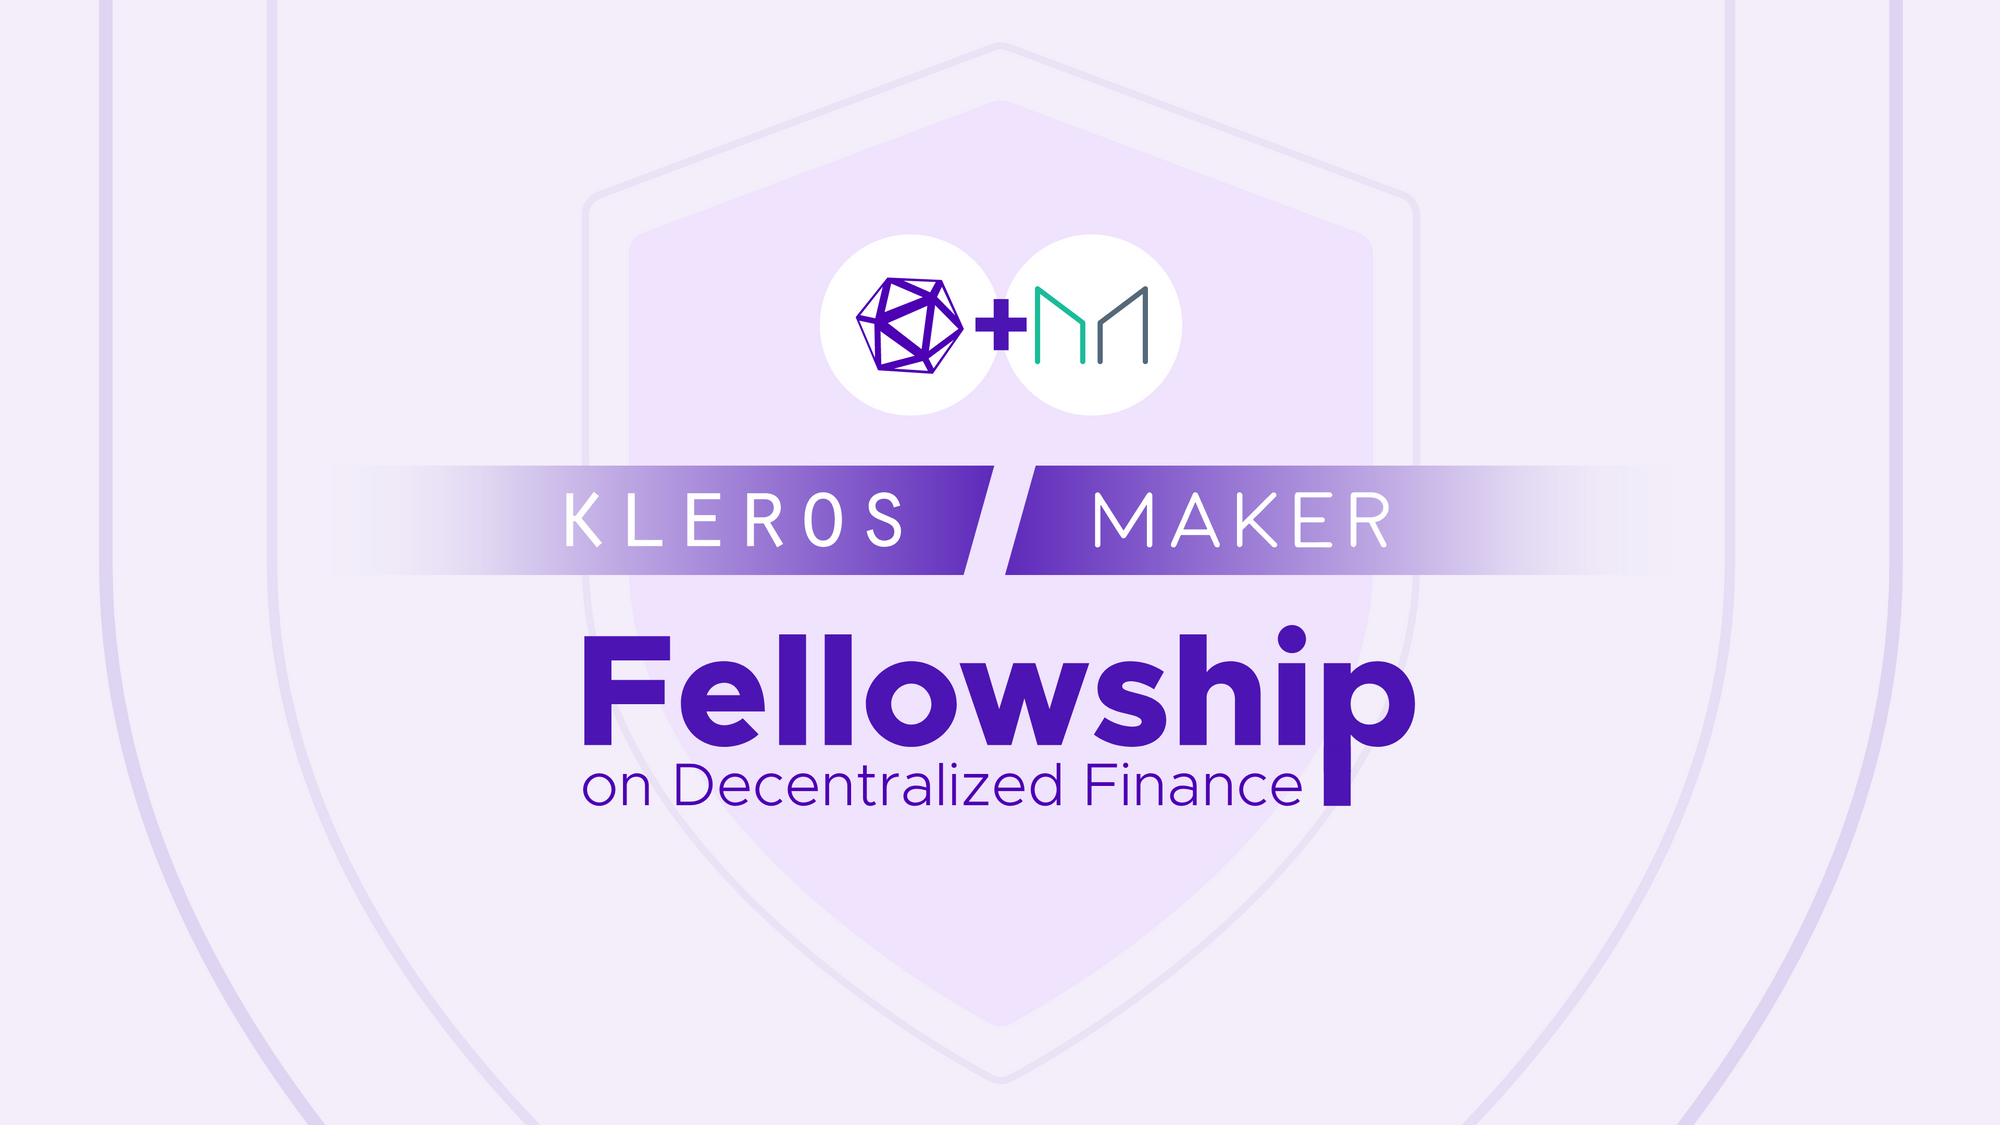 The Kleros/Maker Fellowship on Decentralized Finance